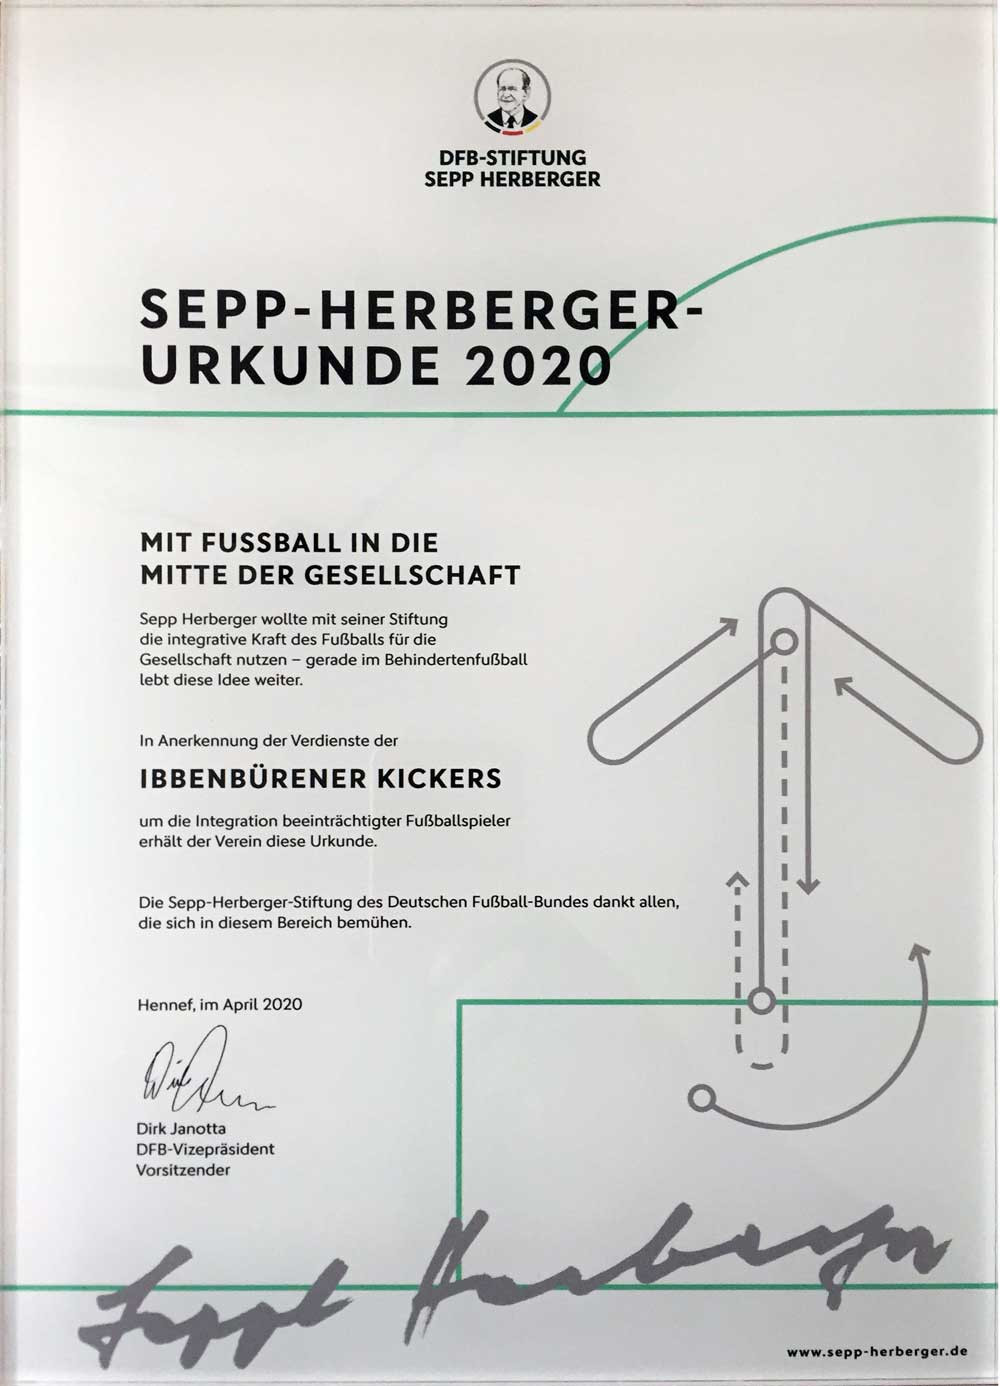 Übergabe der Auszeichnung durch Mandana Büscher von der Sepp-Herberger-Stiftung